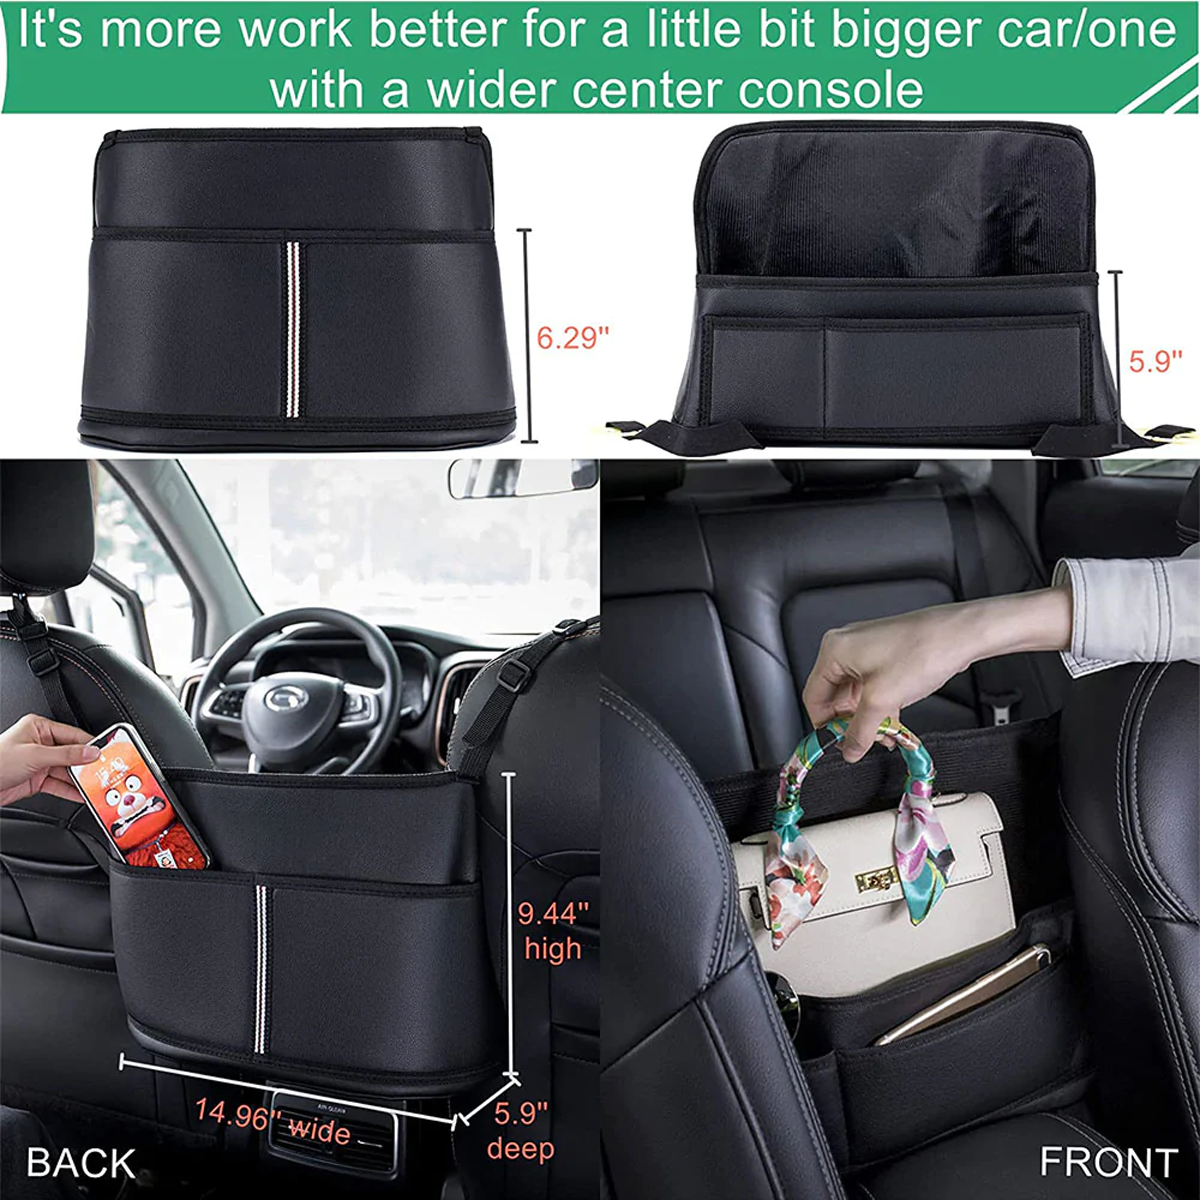 Car Purse Holder for Car Handbag Holder Between Seats Premium PU Leather, Custom Fit For Car, Hanging Car Purse Storage Pocket Back Seat Pet Barrier DLOV223